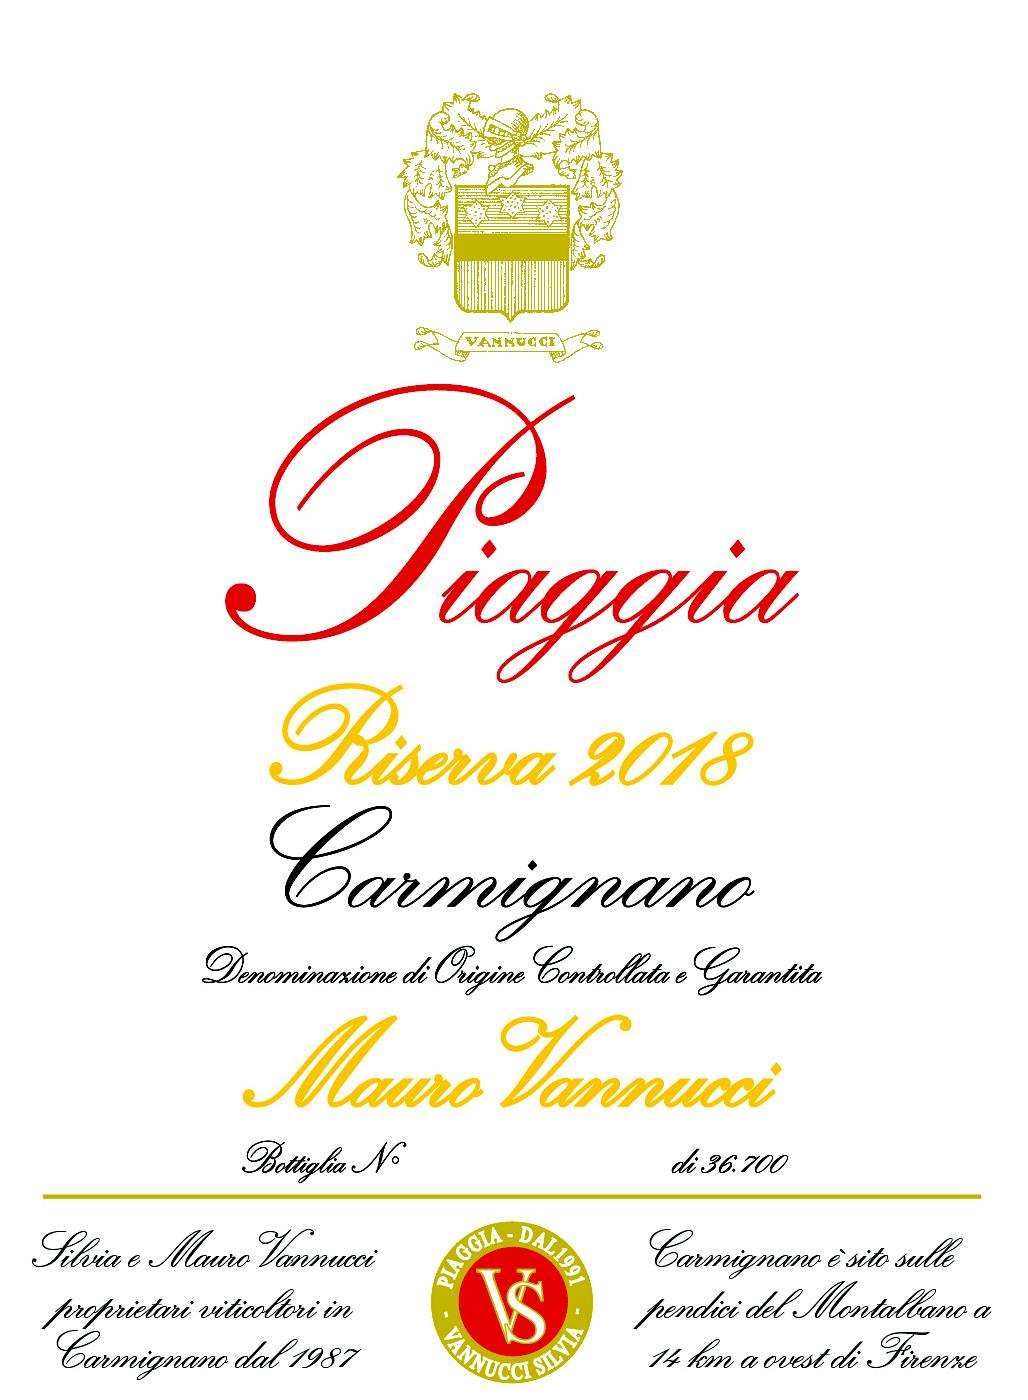 Label for Piaggia